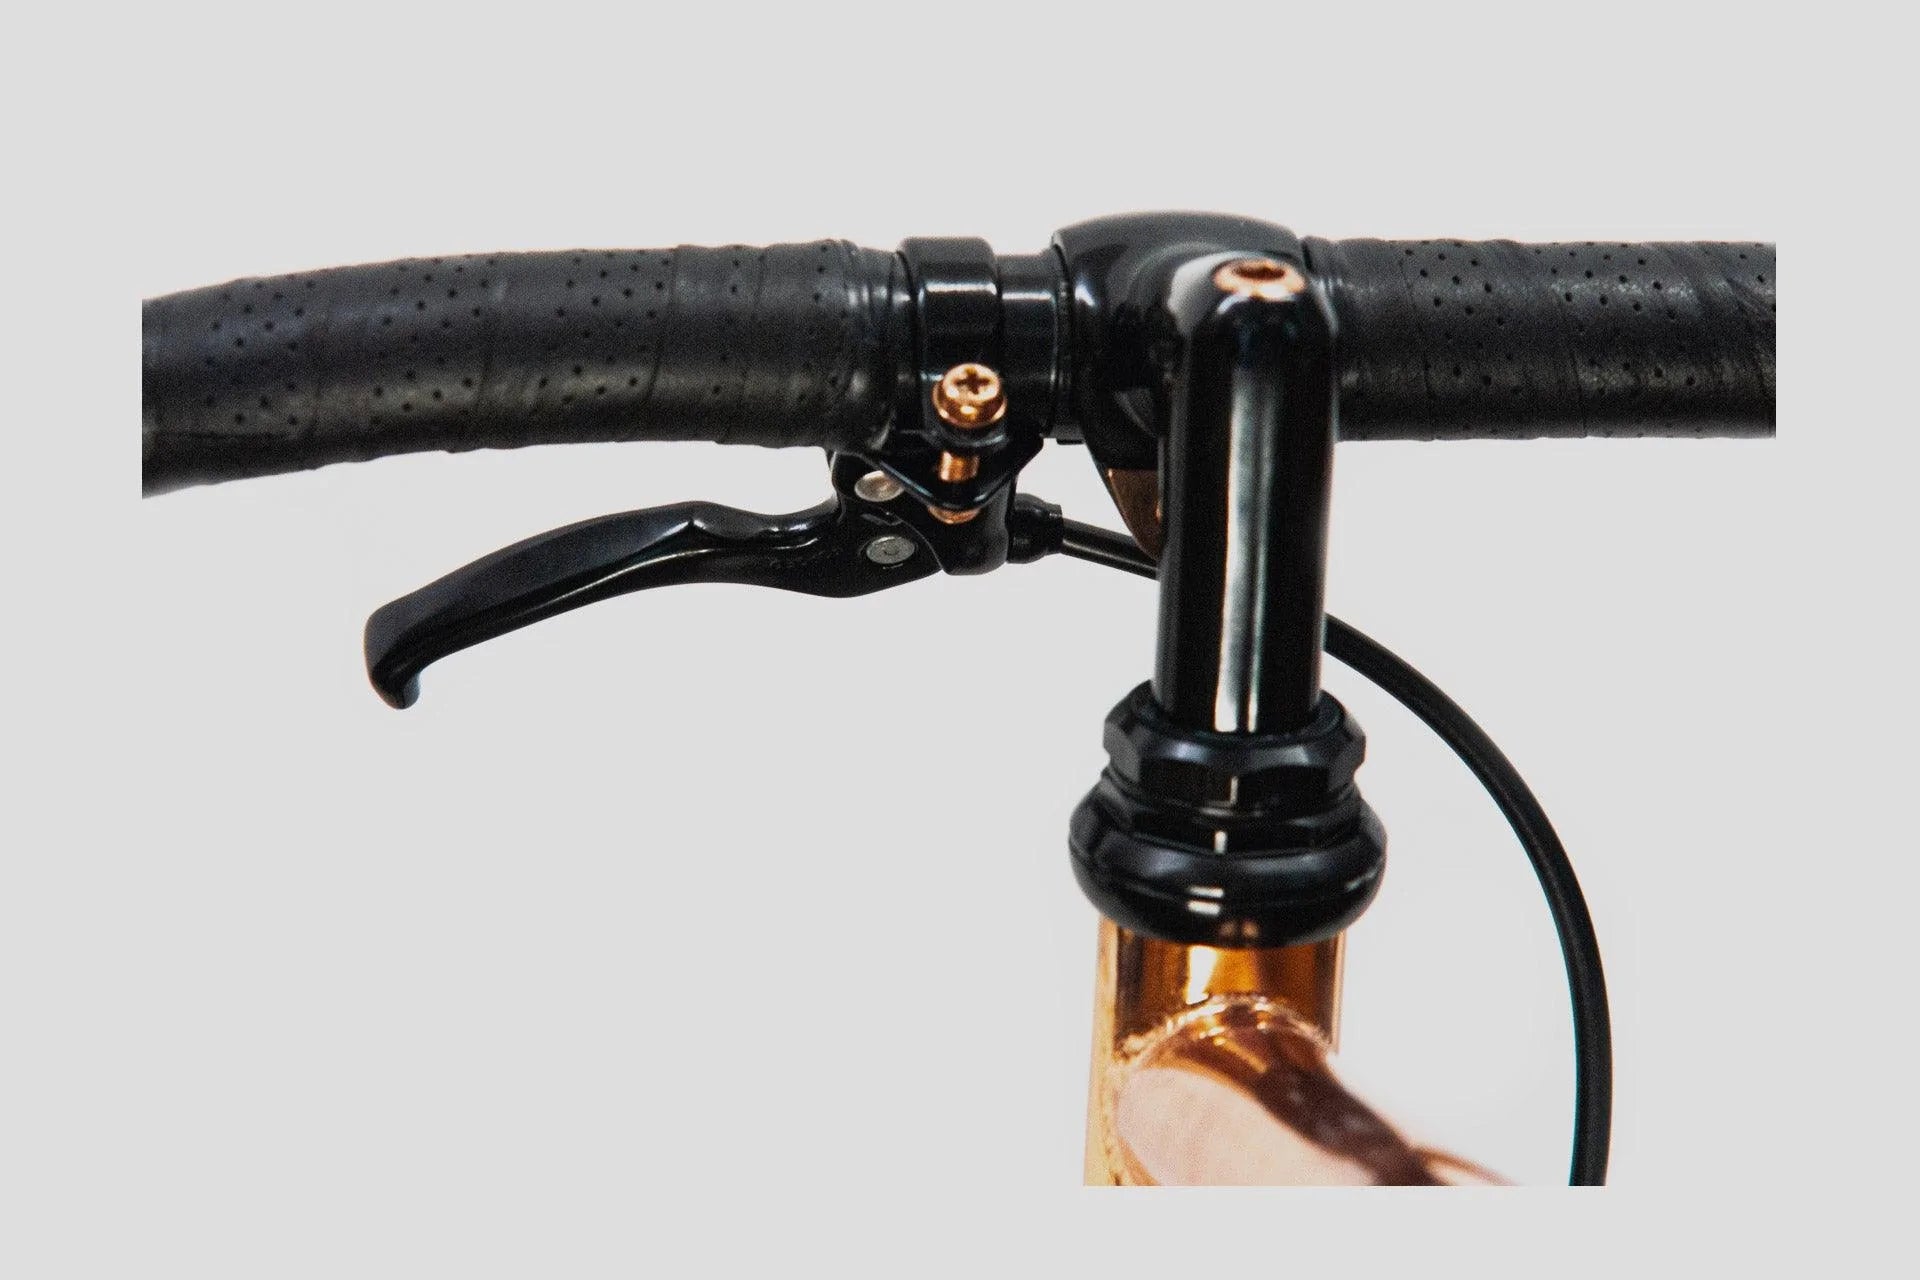 LAMA - 4gear - Copper + Details - GOrilla . urban cycling